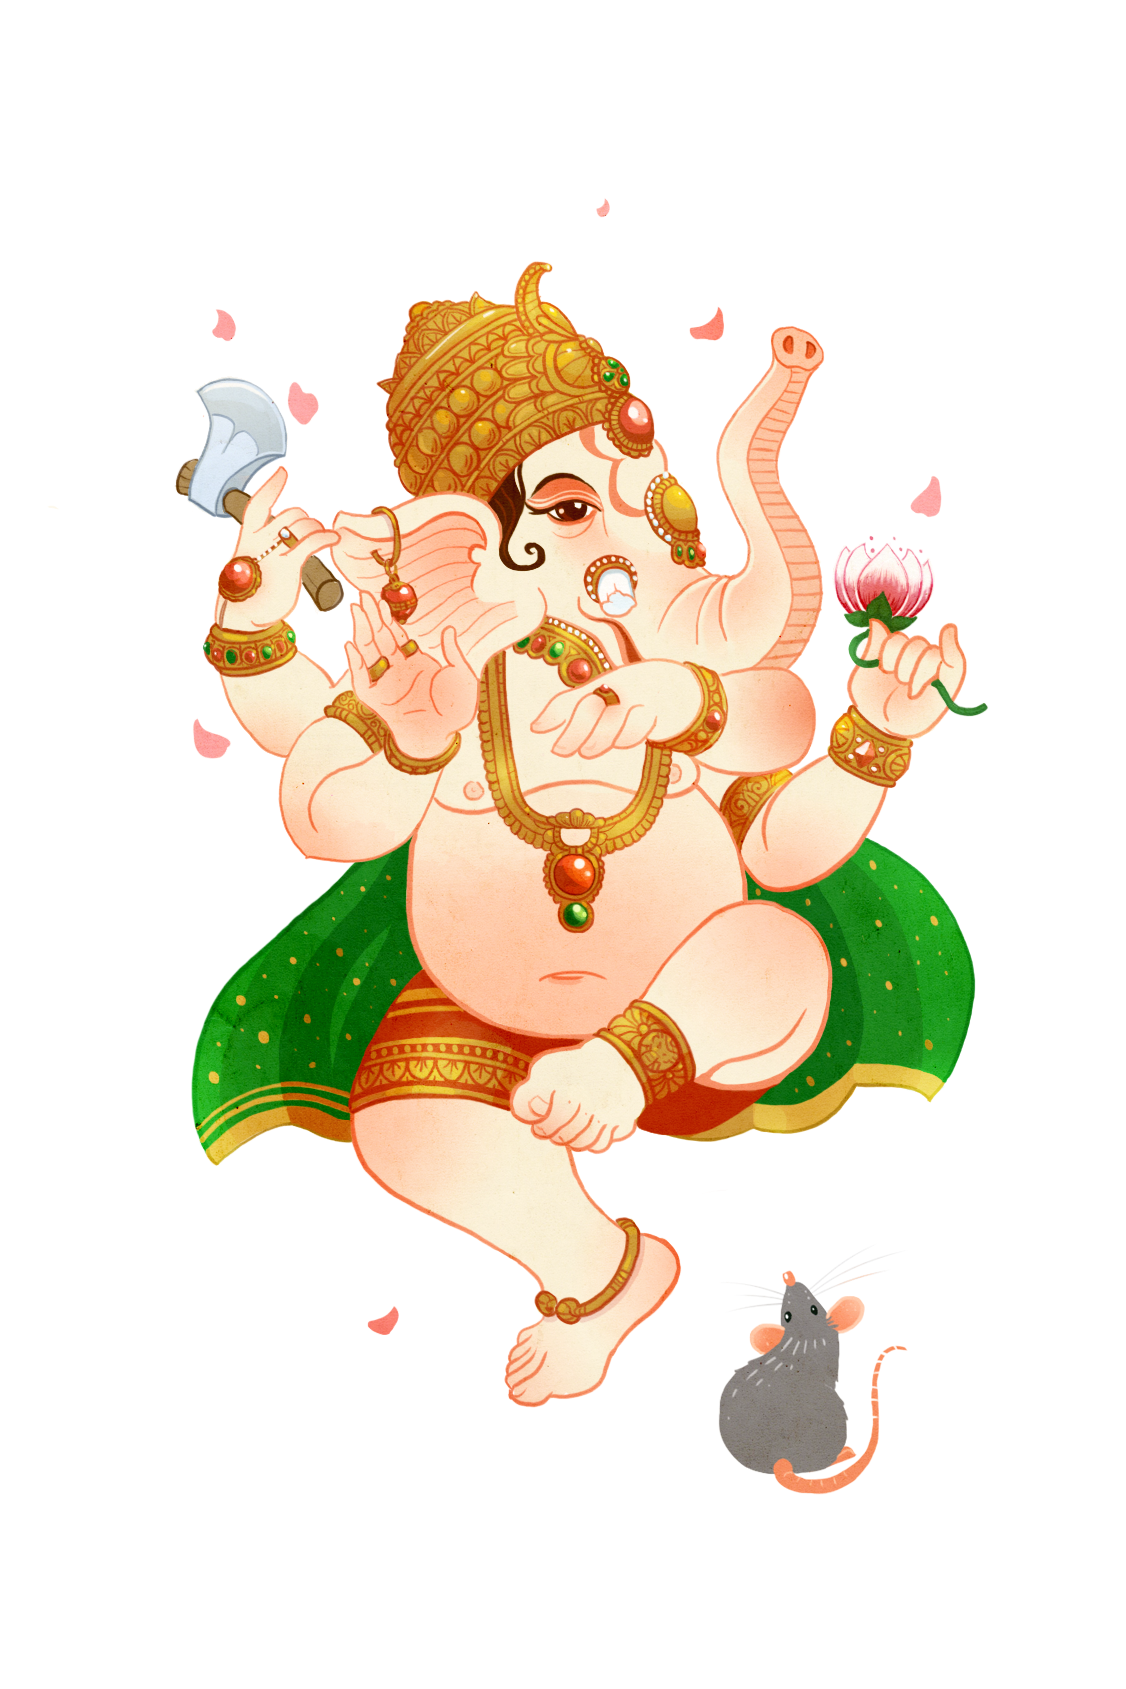 Ganesh monkey king mythology fantasy concept art educational God indian Hindu chinese legend